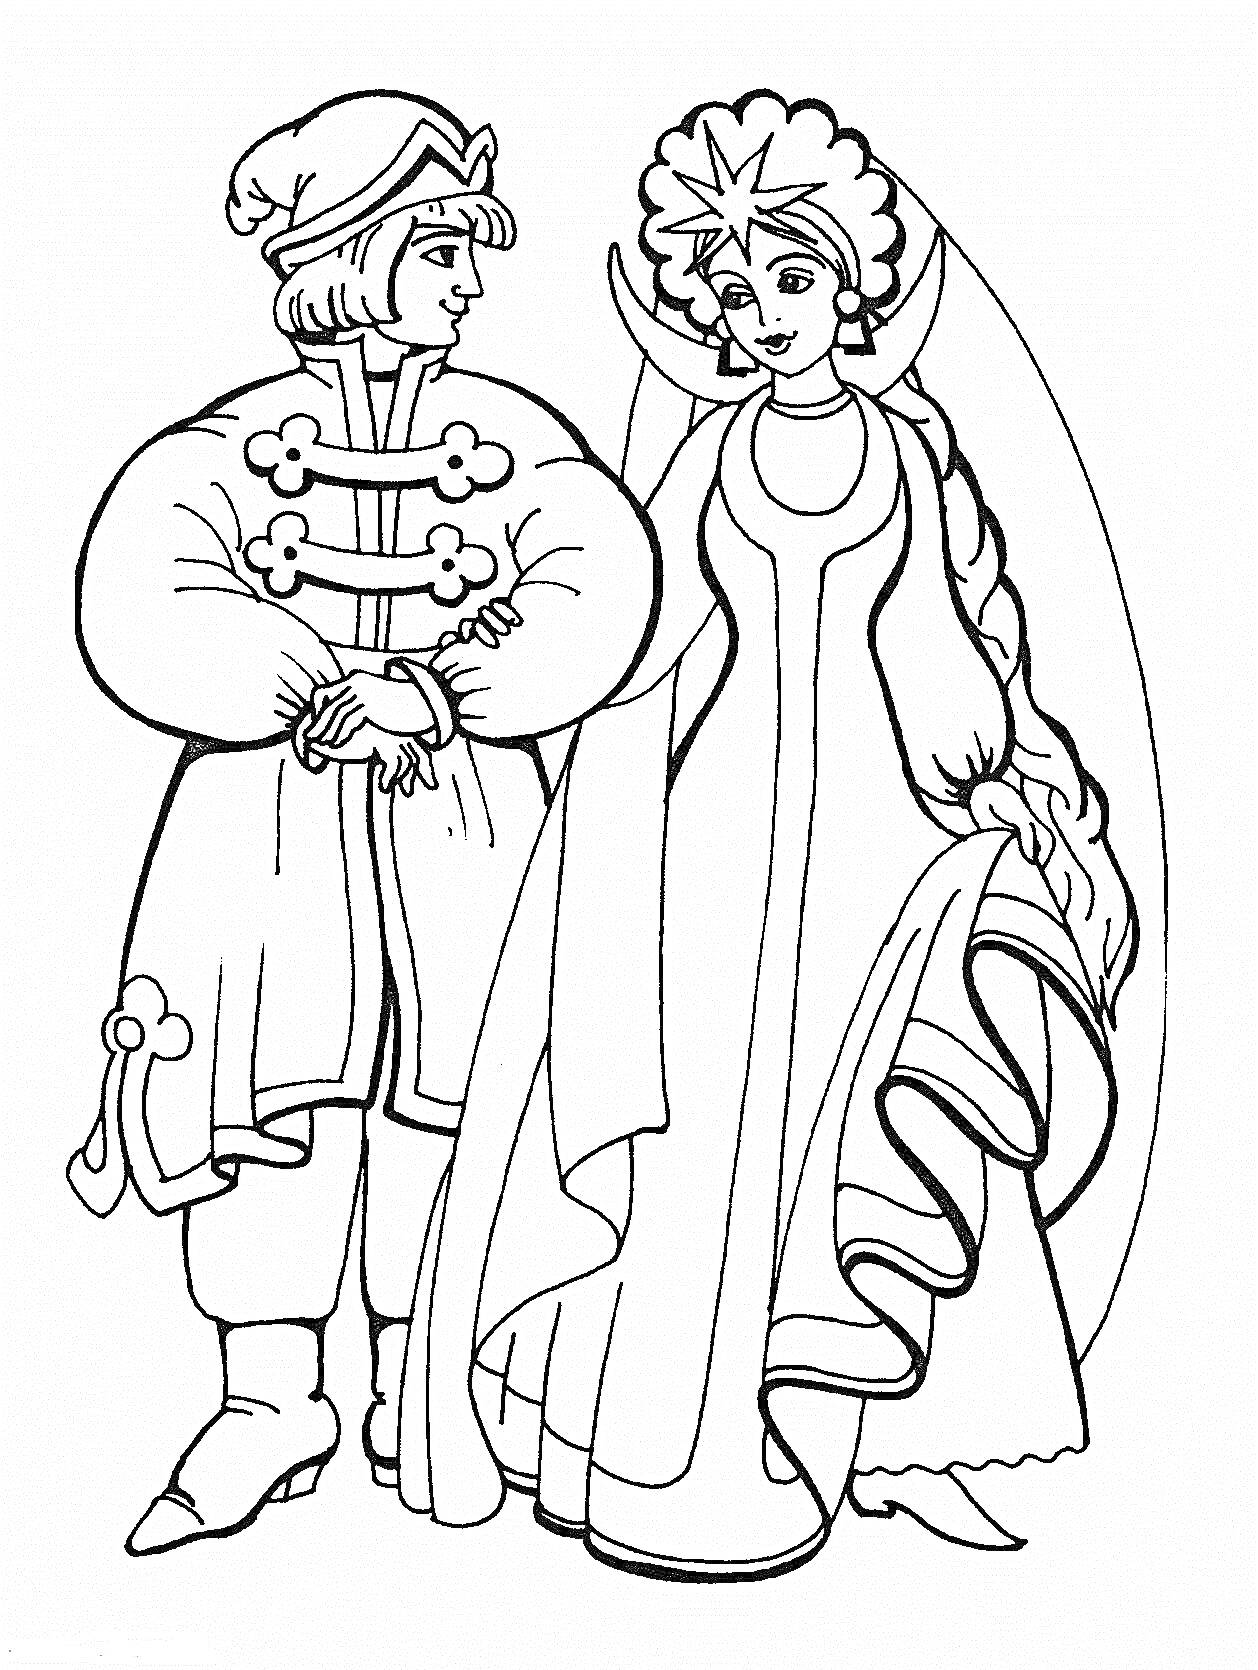 Раскраска Принц в домотканной одежде с вензелями на пуговицах и Принцесса в длинном платье с короной